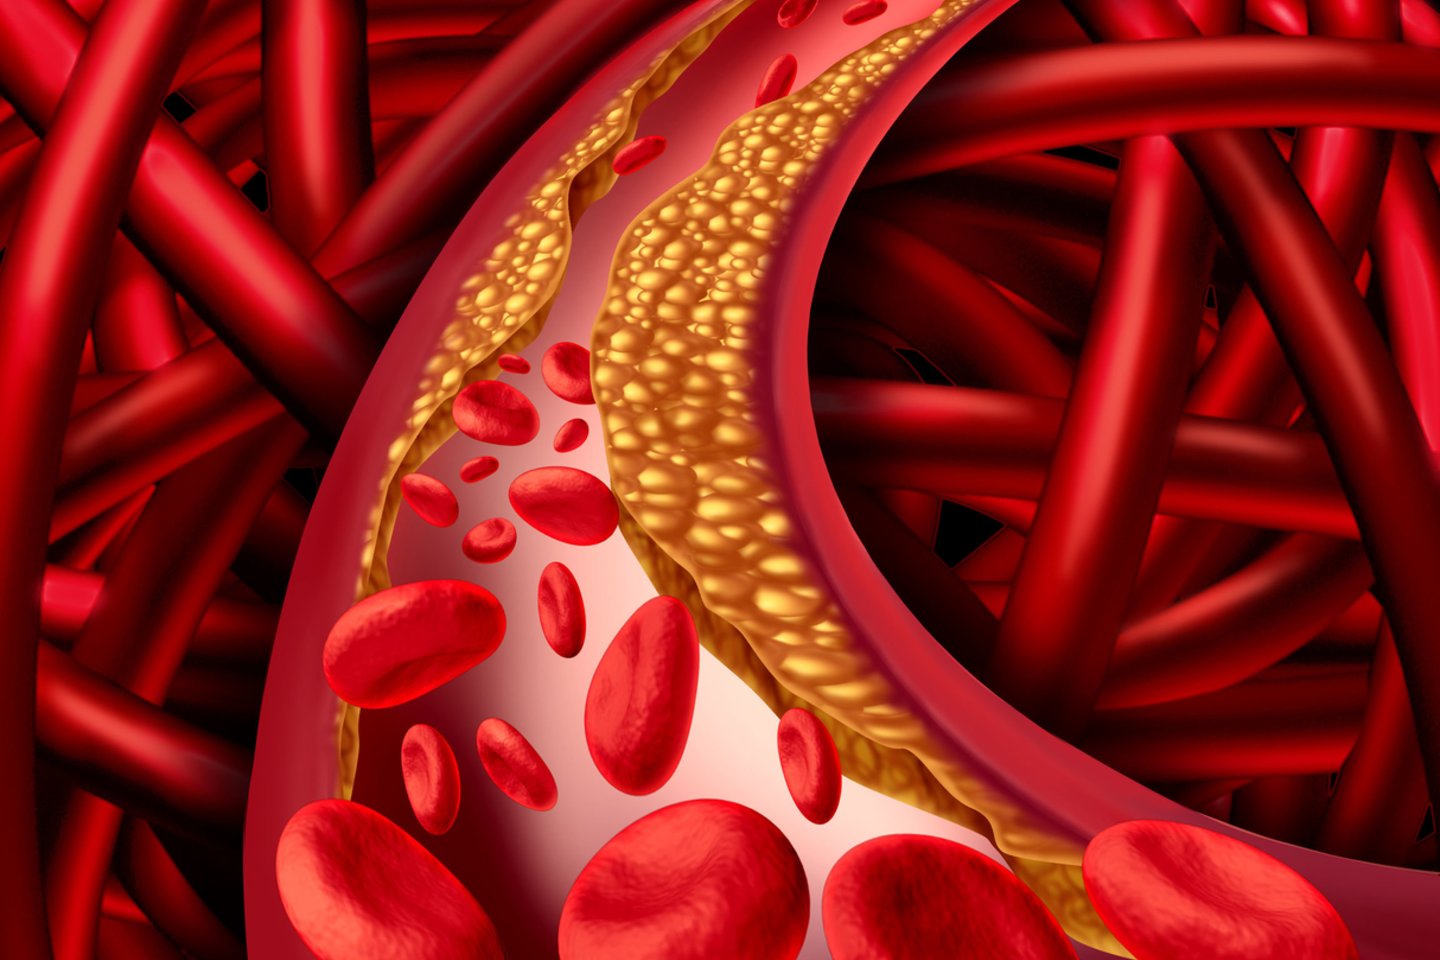  Širdies ir kraujagyslių ligos išlieka pagrindine mirties priežastimi.<br> 123rf.com nuotr.